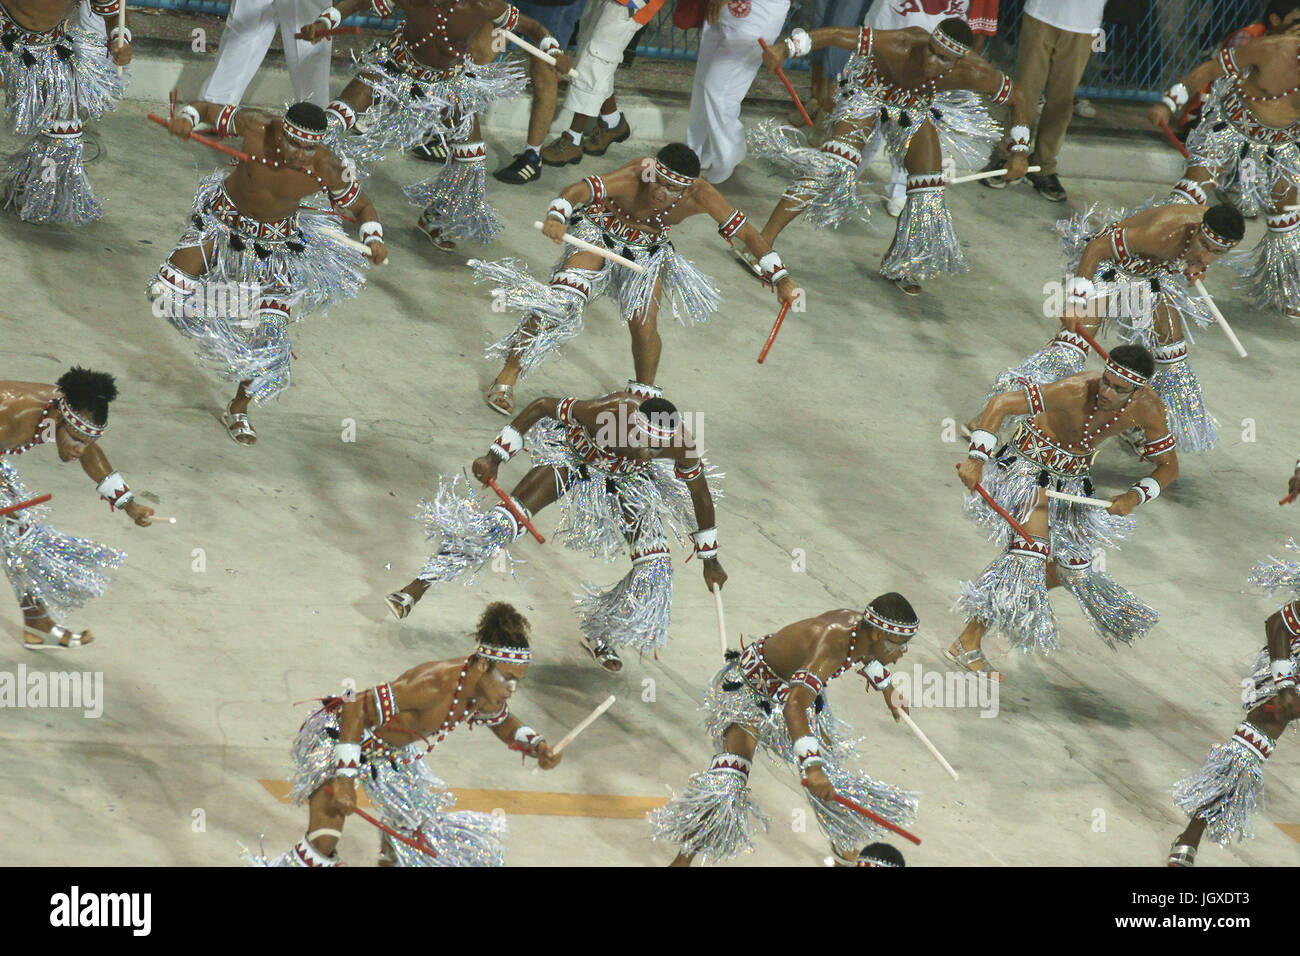 Carnaval 2009, l'école de samba Salgueiro, Champion, Rio de Janeiro, Brésil Banque D'Images